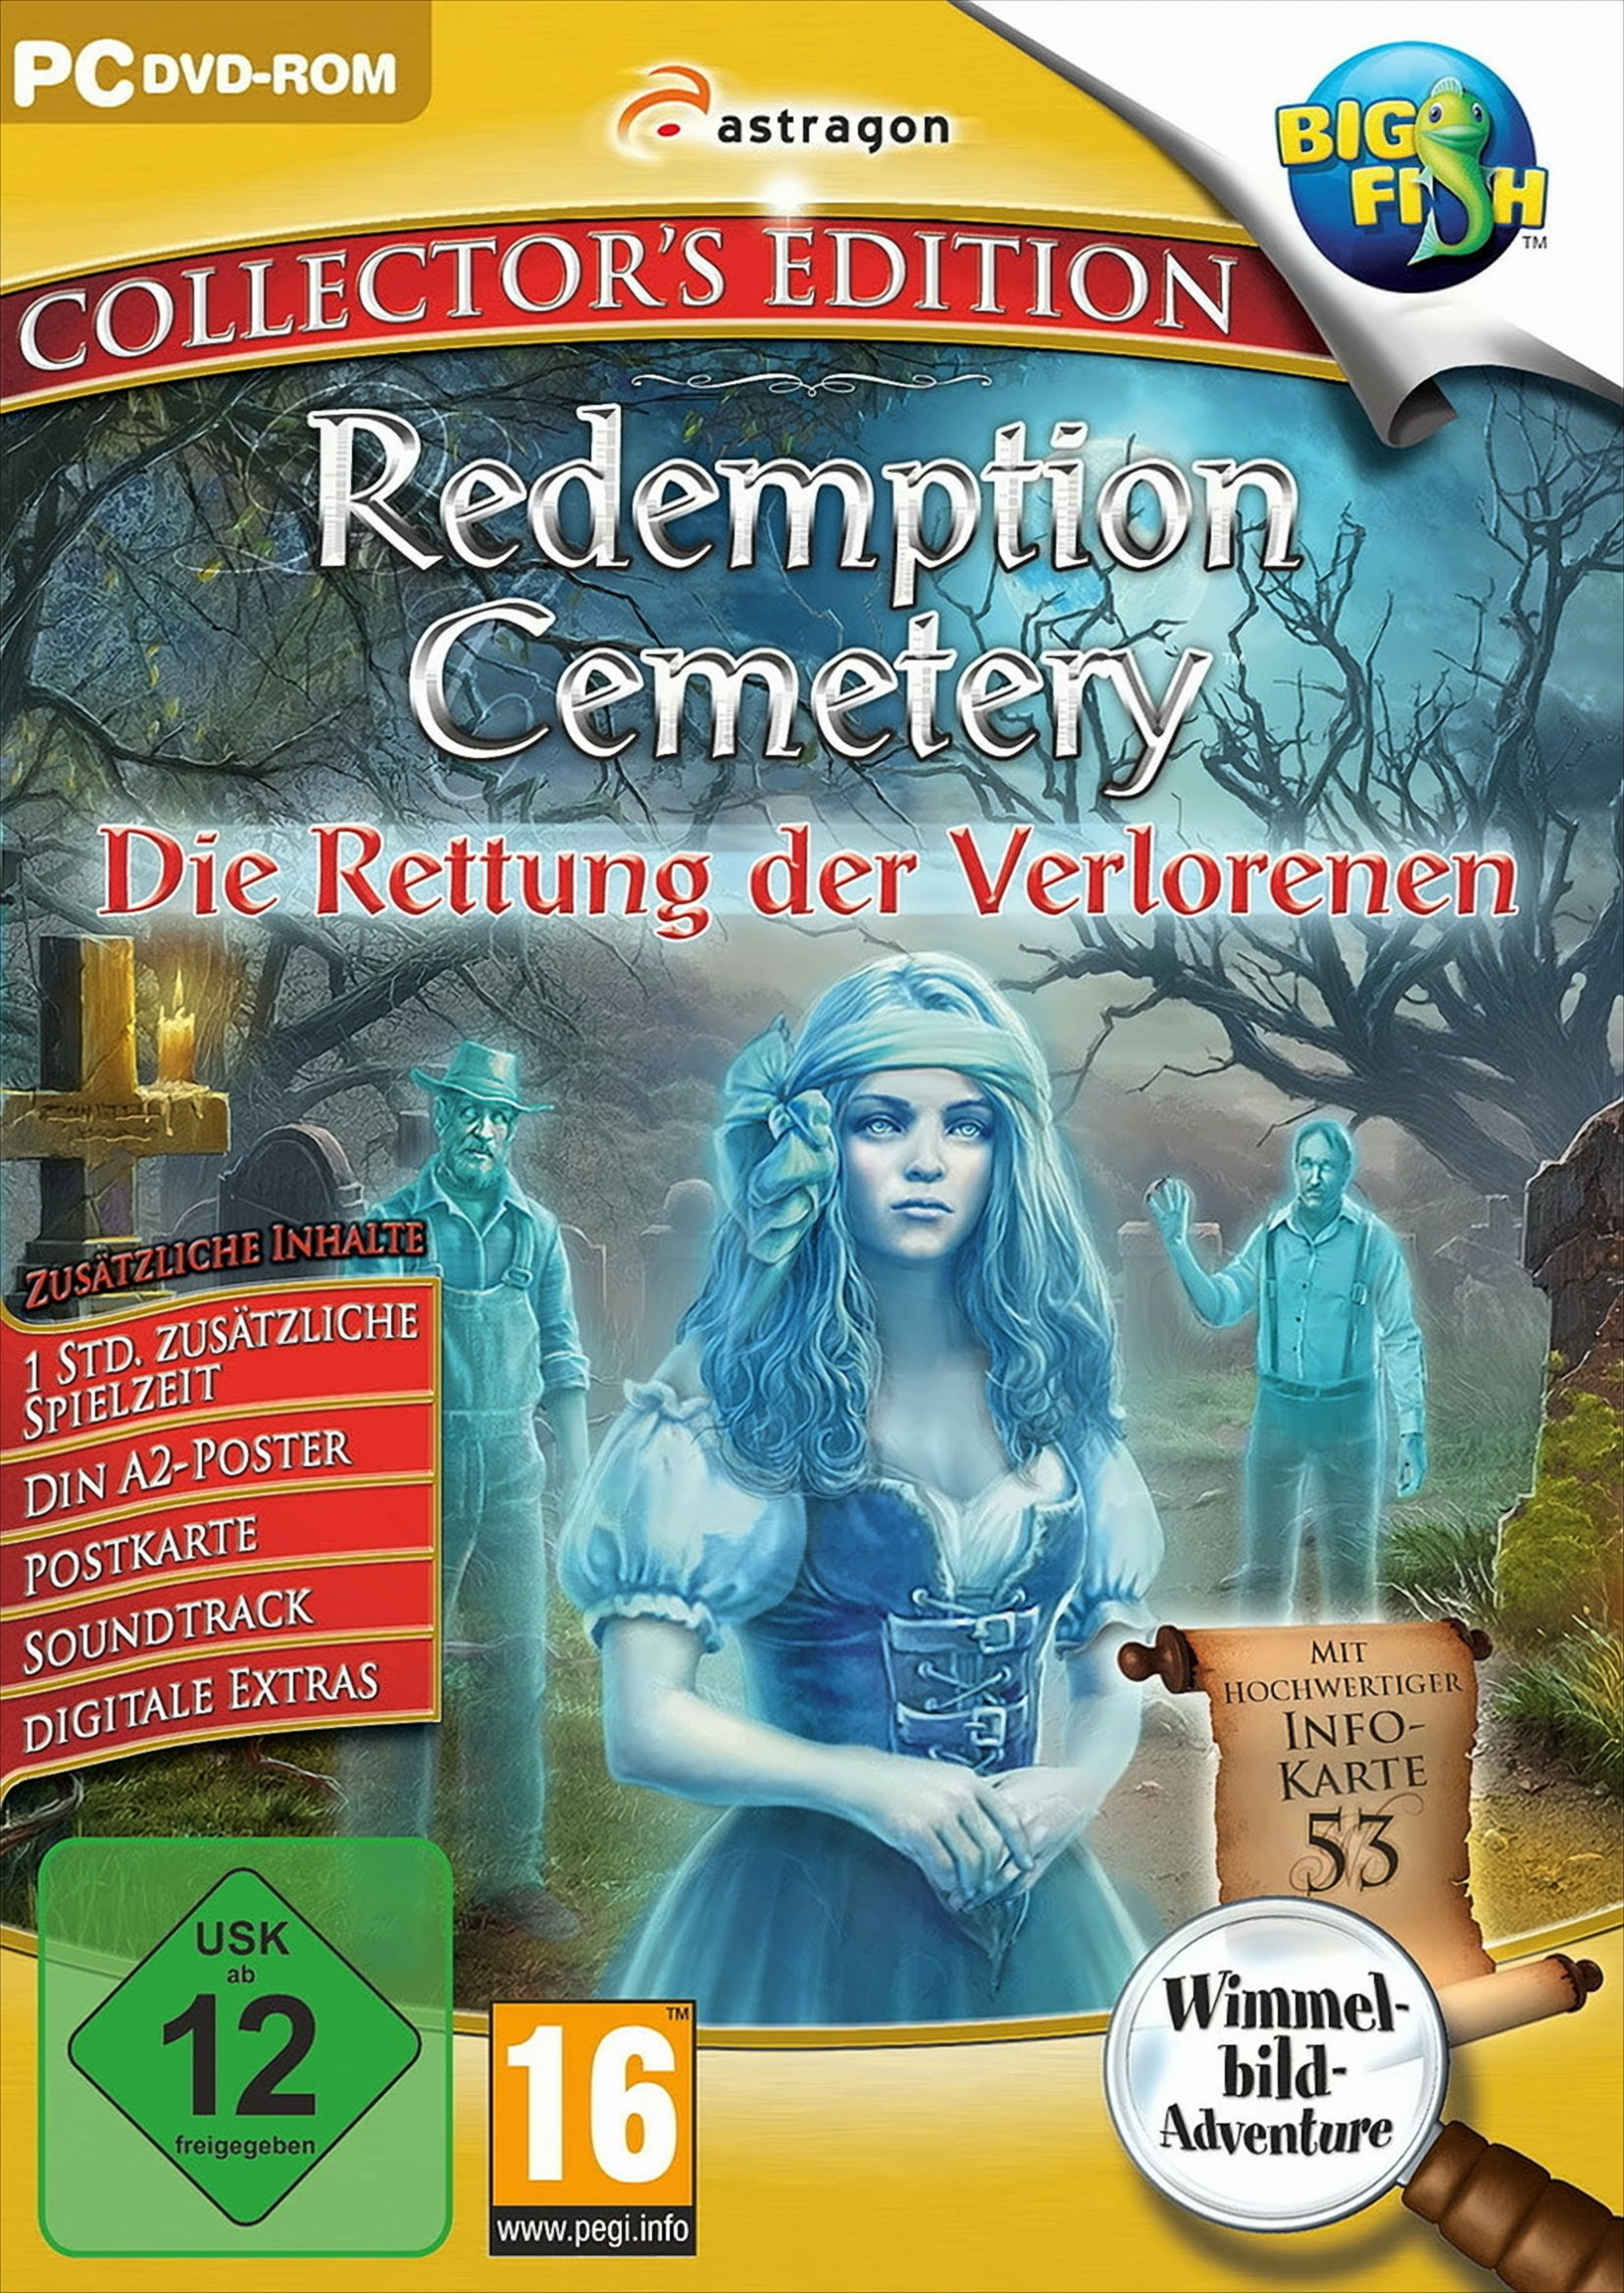 Redemption Cemetery: [PC] - Verlorenen Rettung Die der Collector\'s - Edition